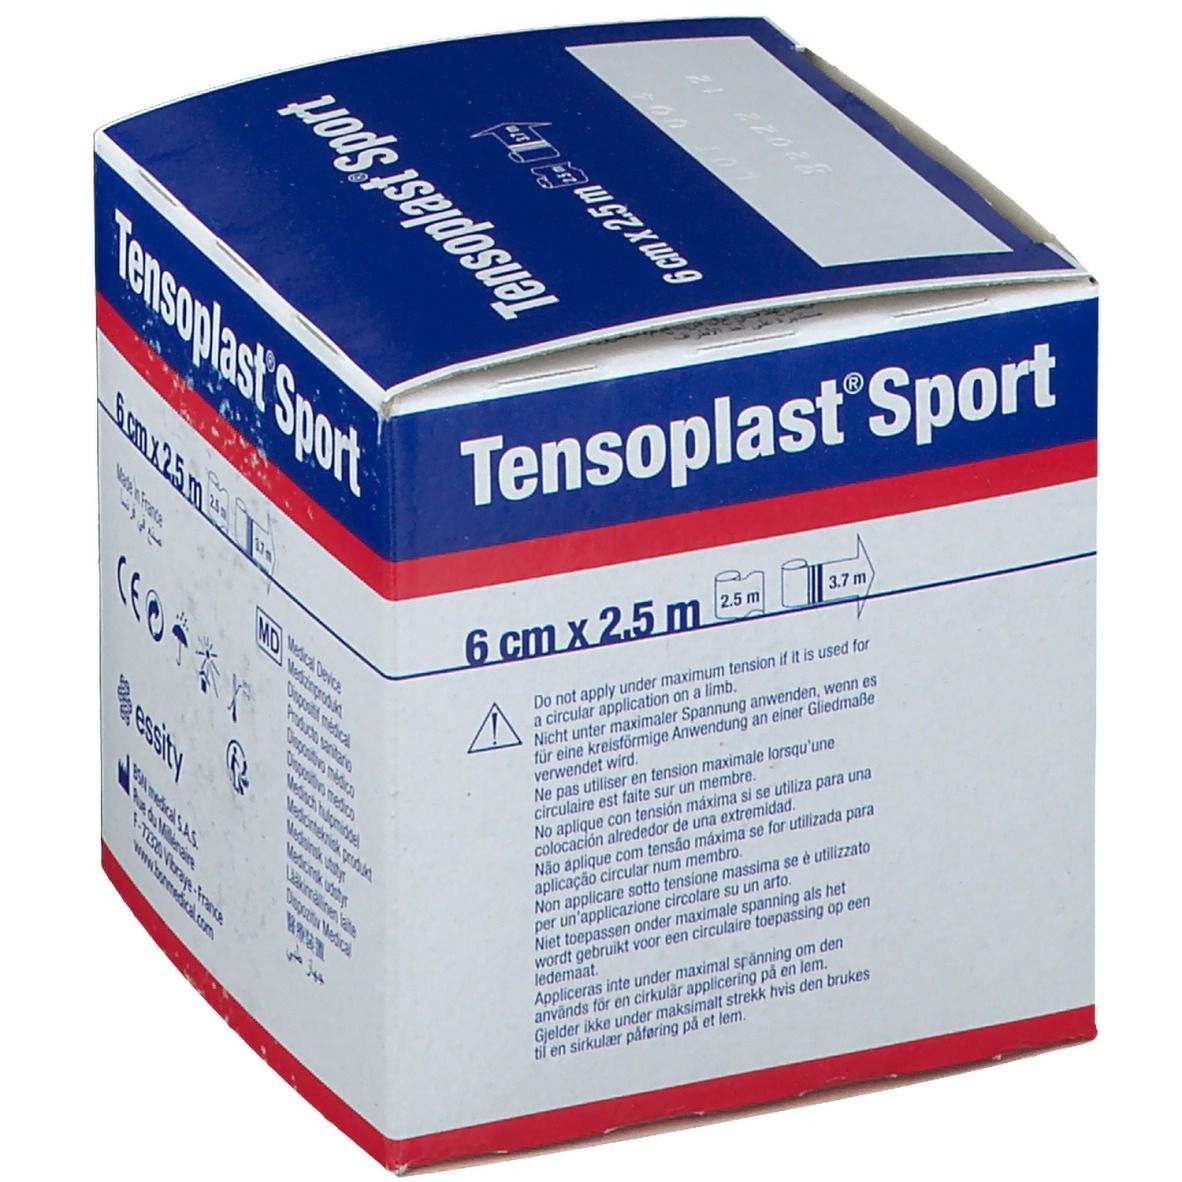 Tensoplast® Sport Elastische Klebebinde 6 cm x 2,5 m